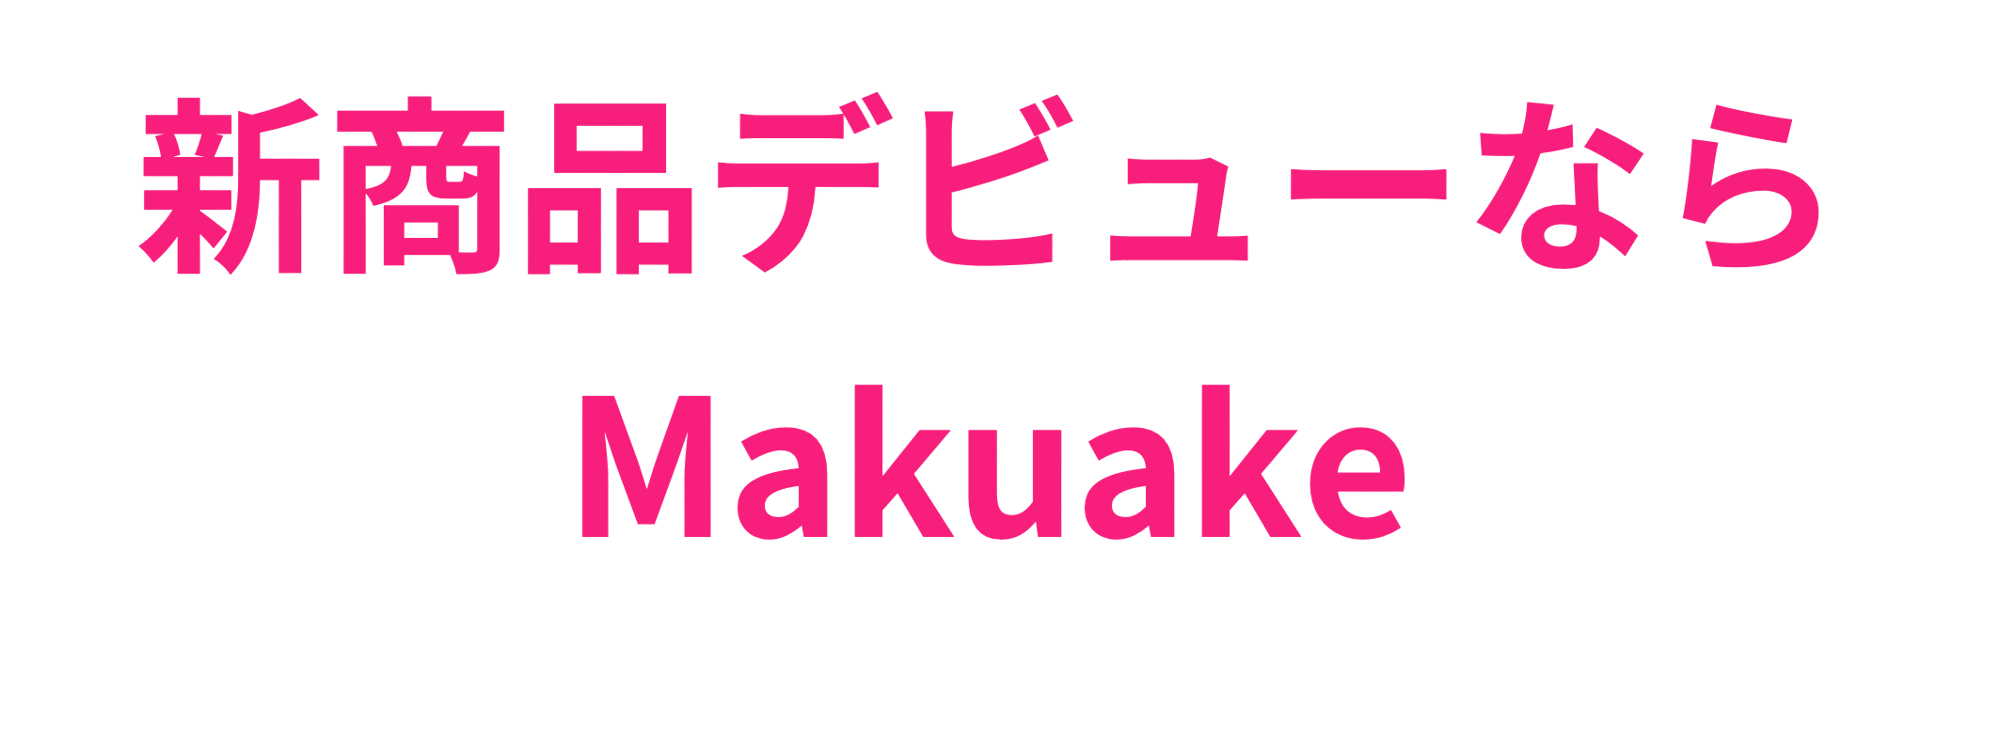 新商品デビューならMakuake